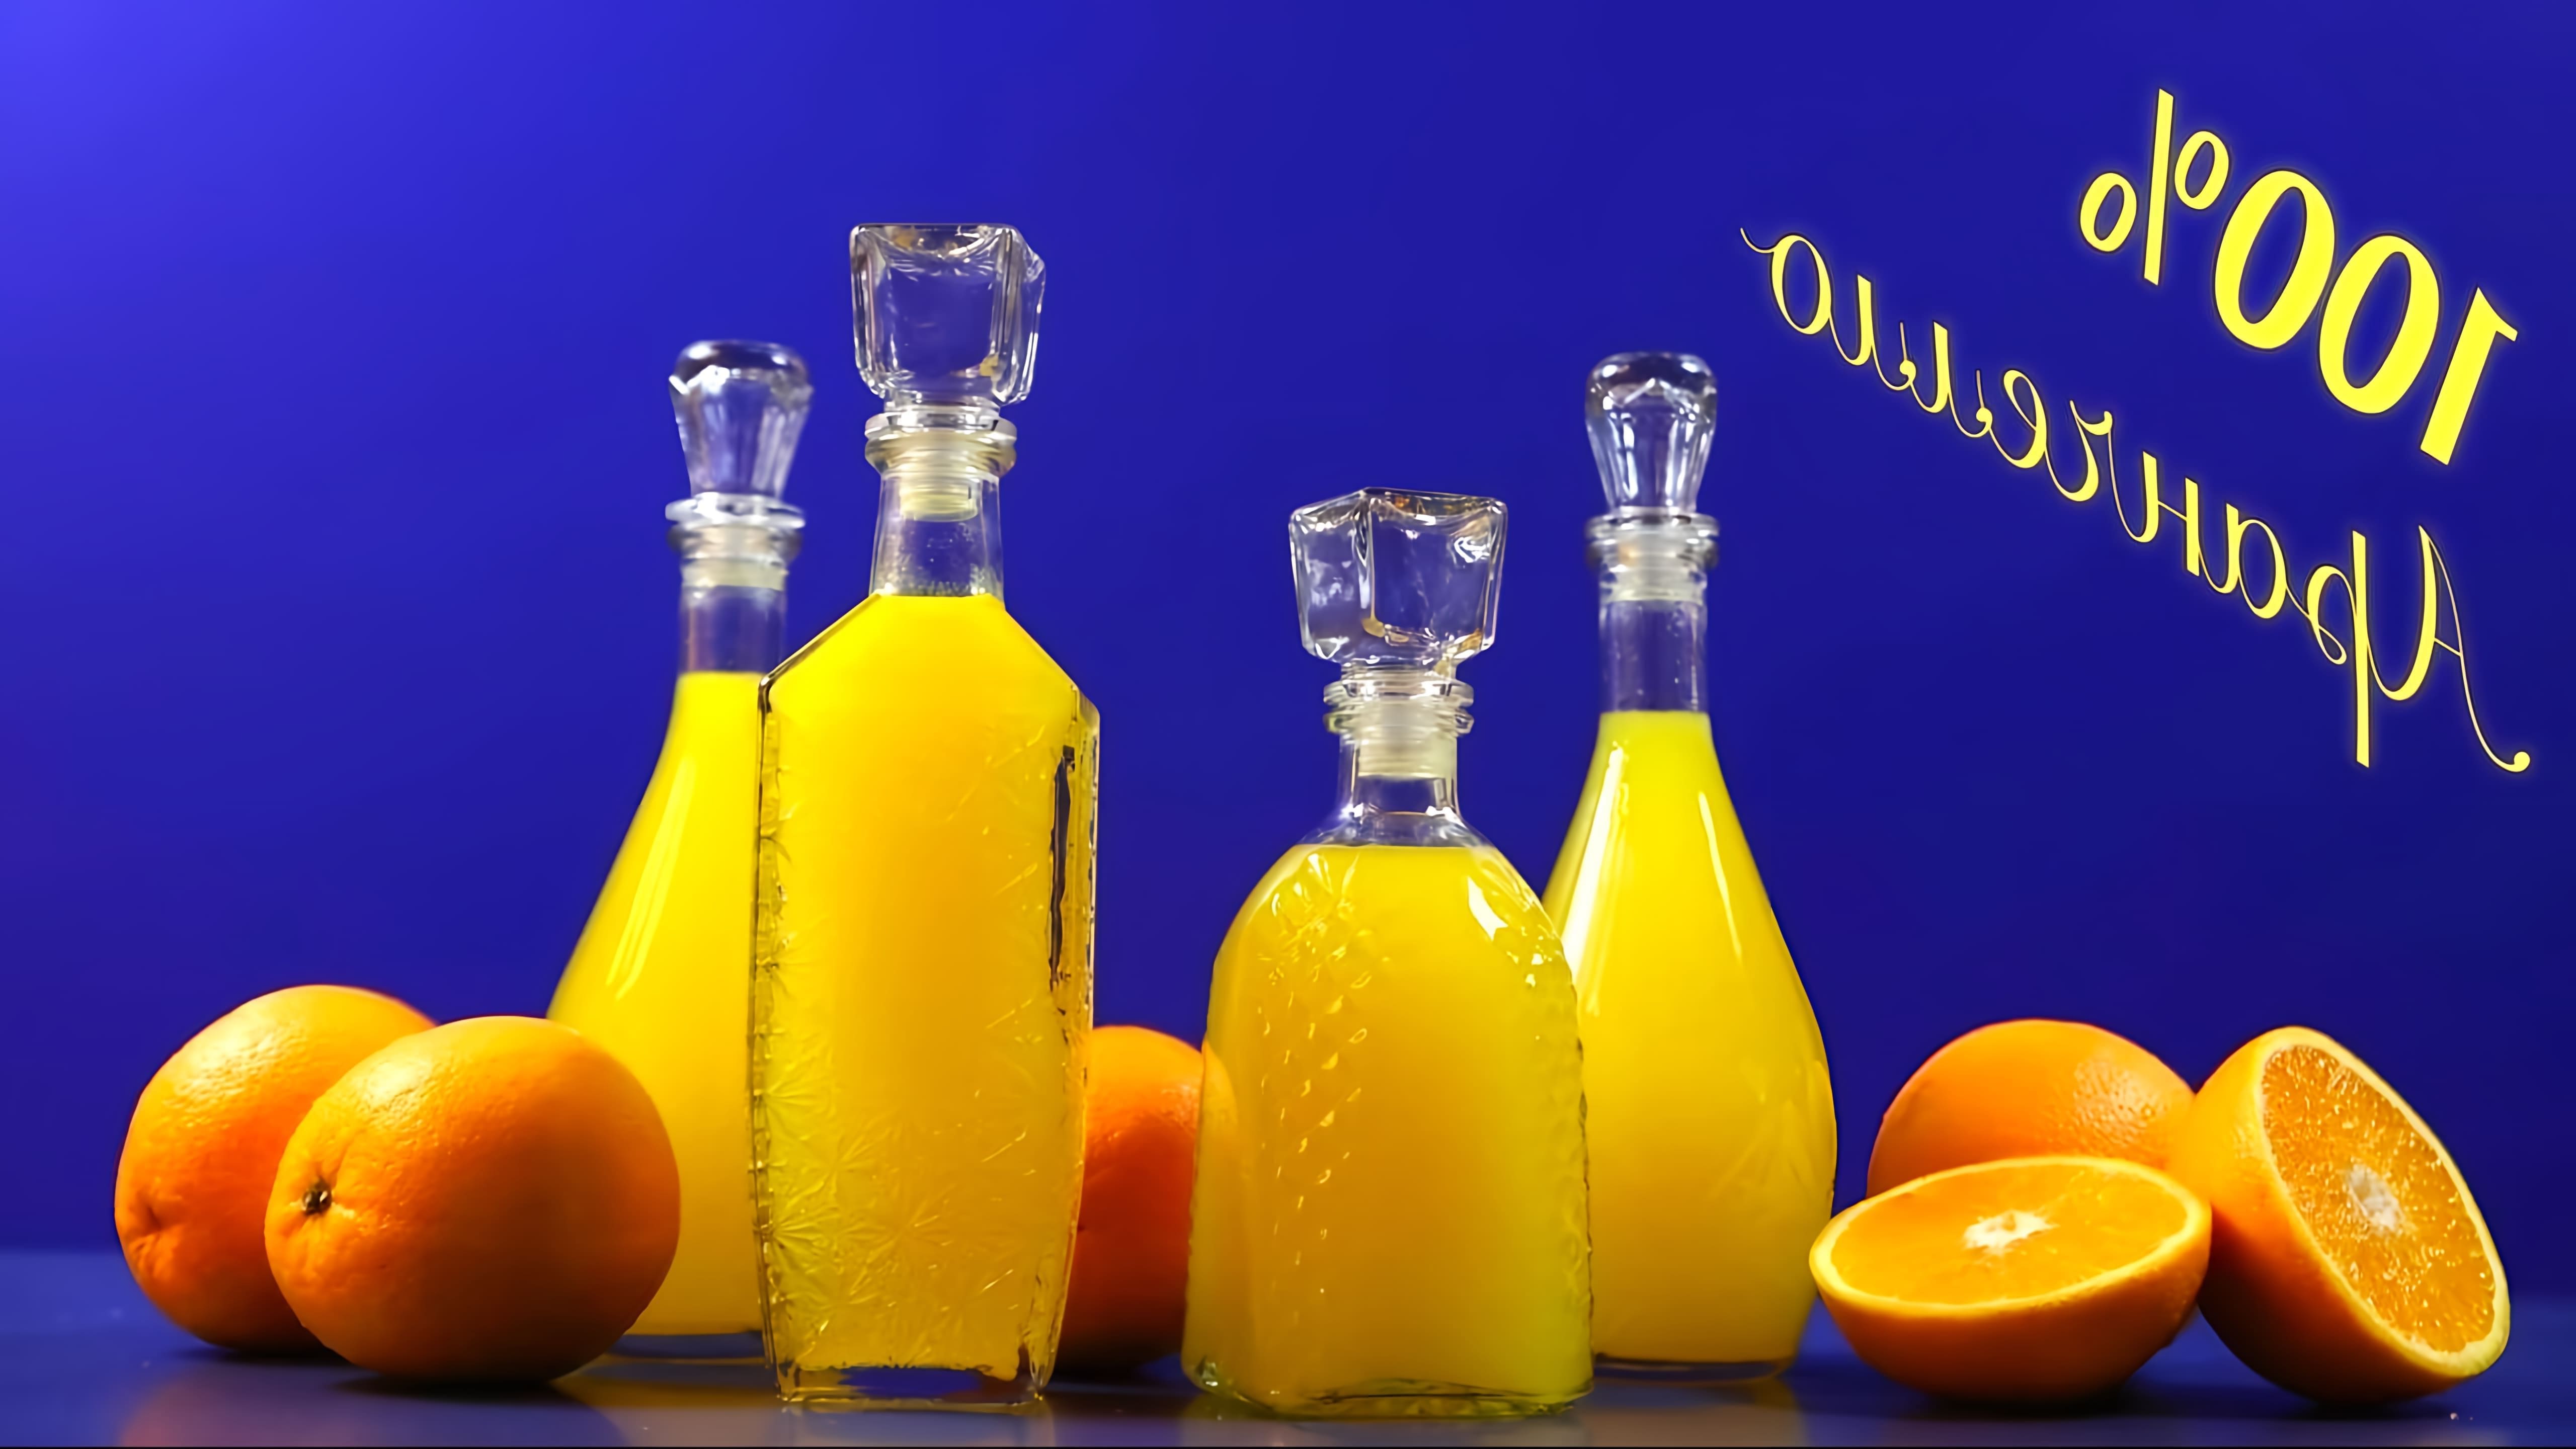 В этом видео демонстрируется рецепт приготовления двух видов апельсинового ликера